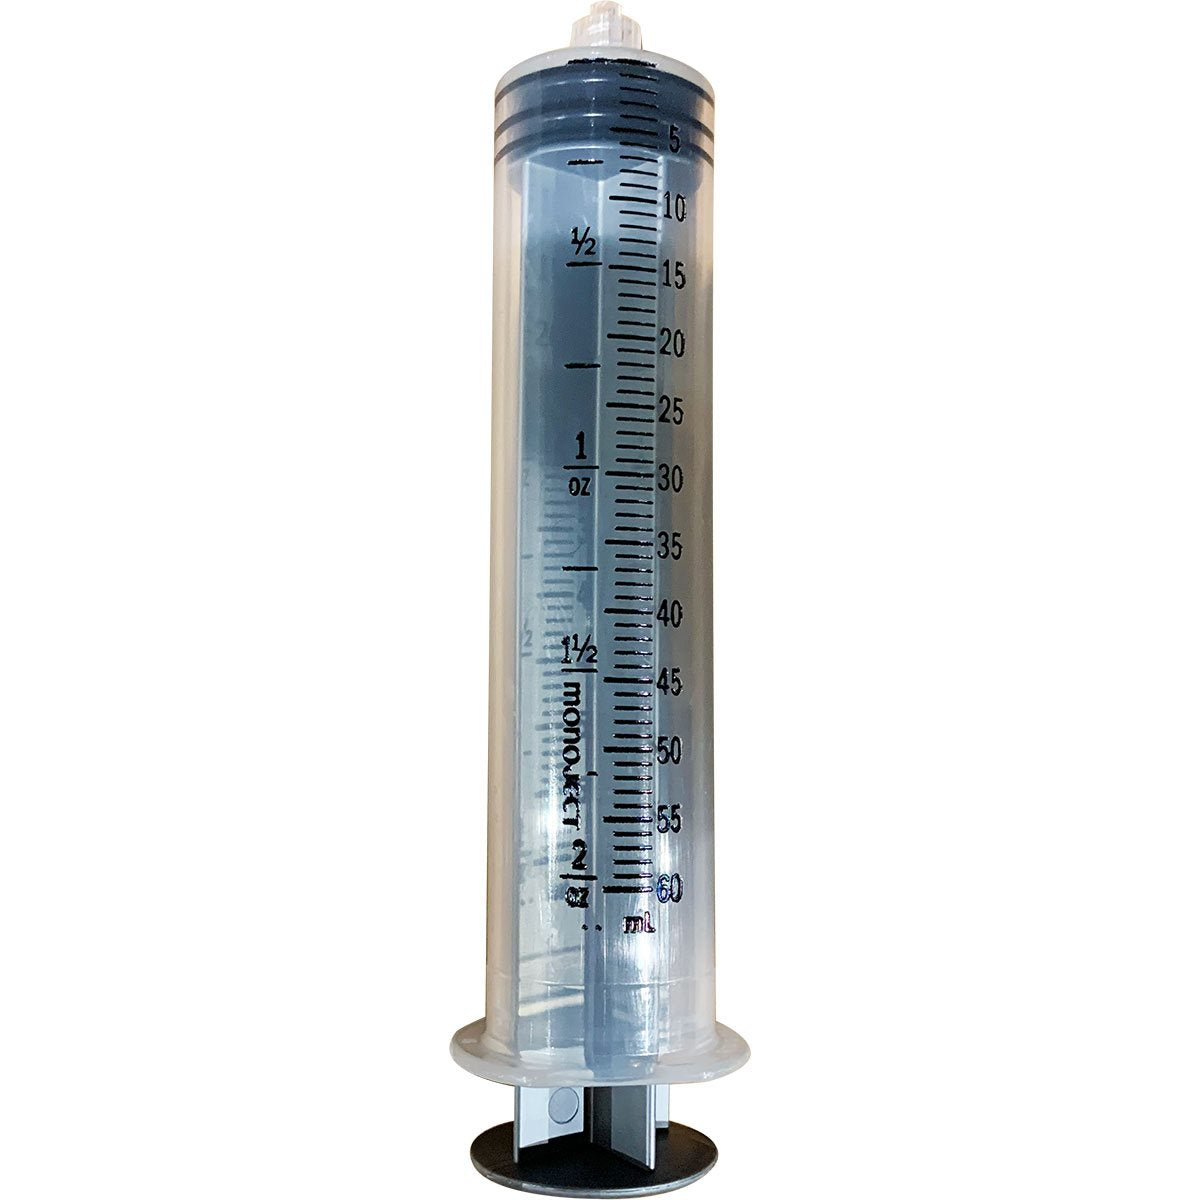 measuring-syringe-60cc-185-Z